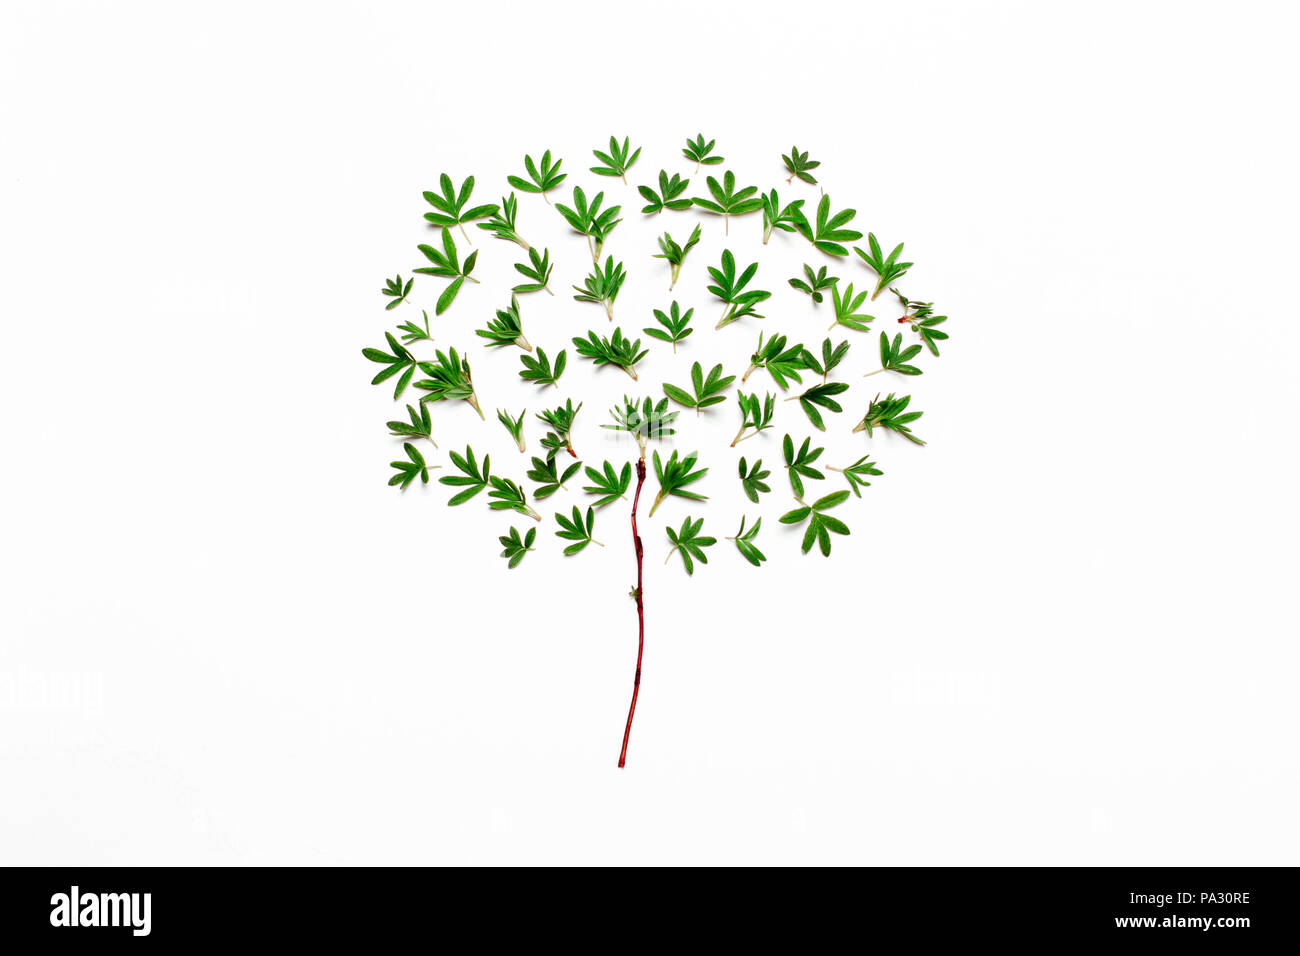 Arborescence constituée de feuilles vertes. Minimaliste concept minimal naturel.Vue de dessus, télévision Banque D'Images